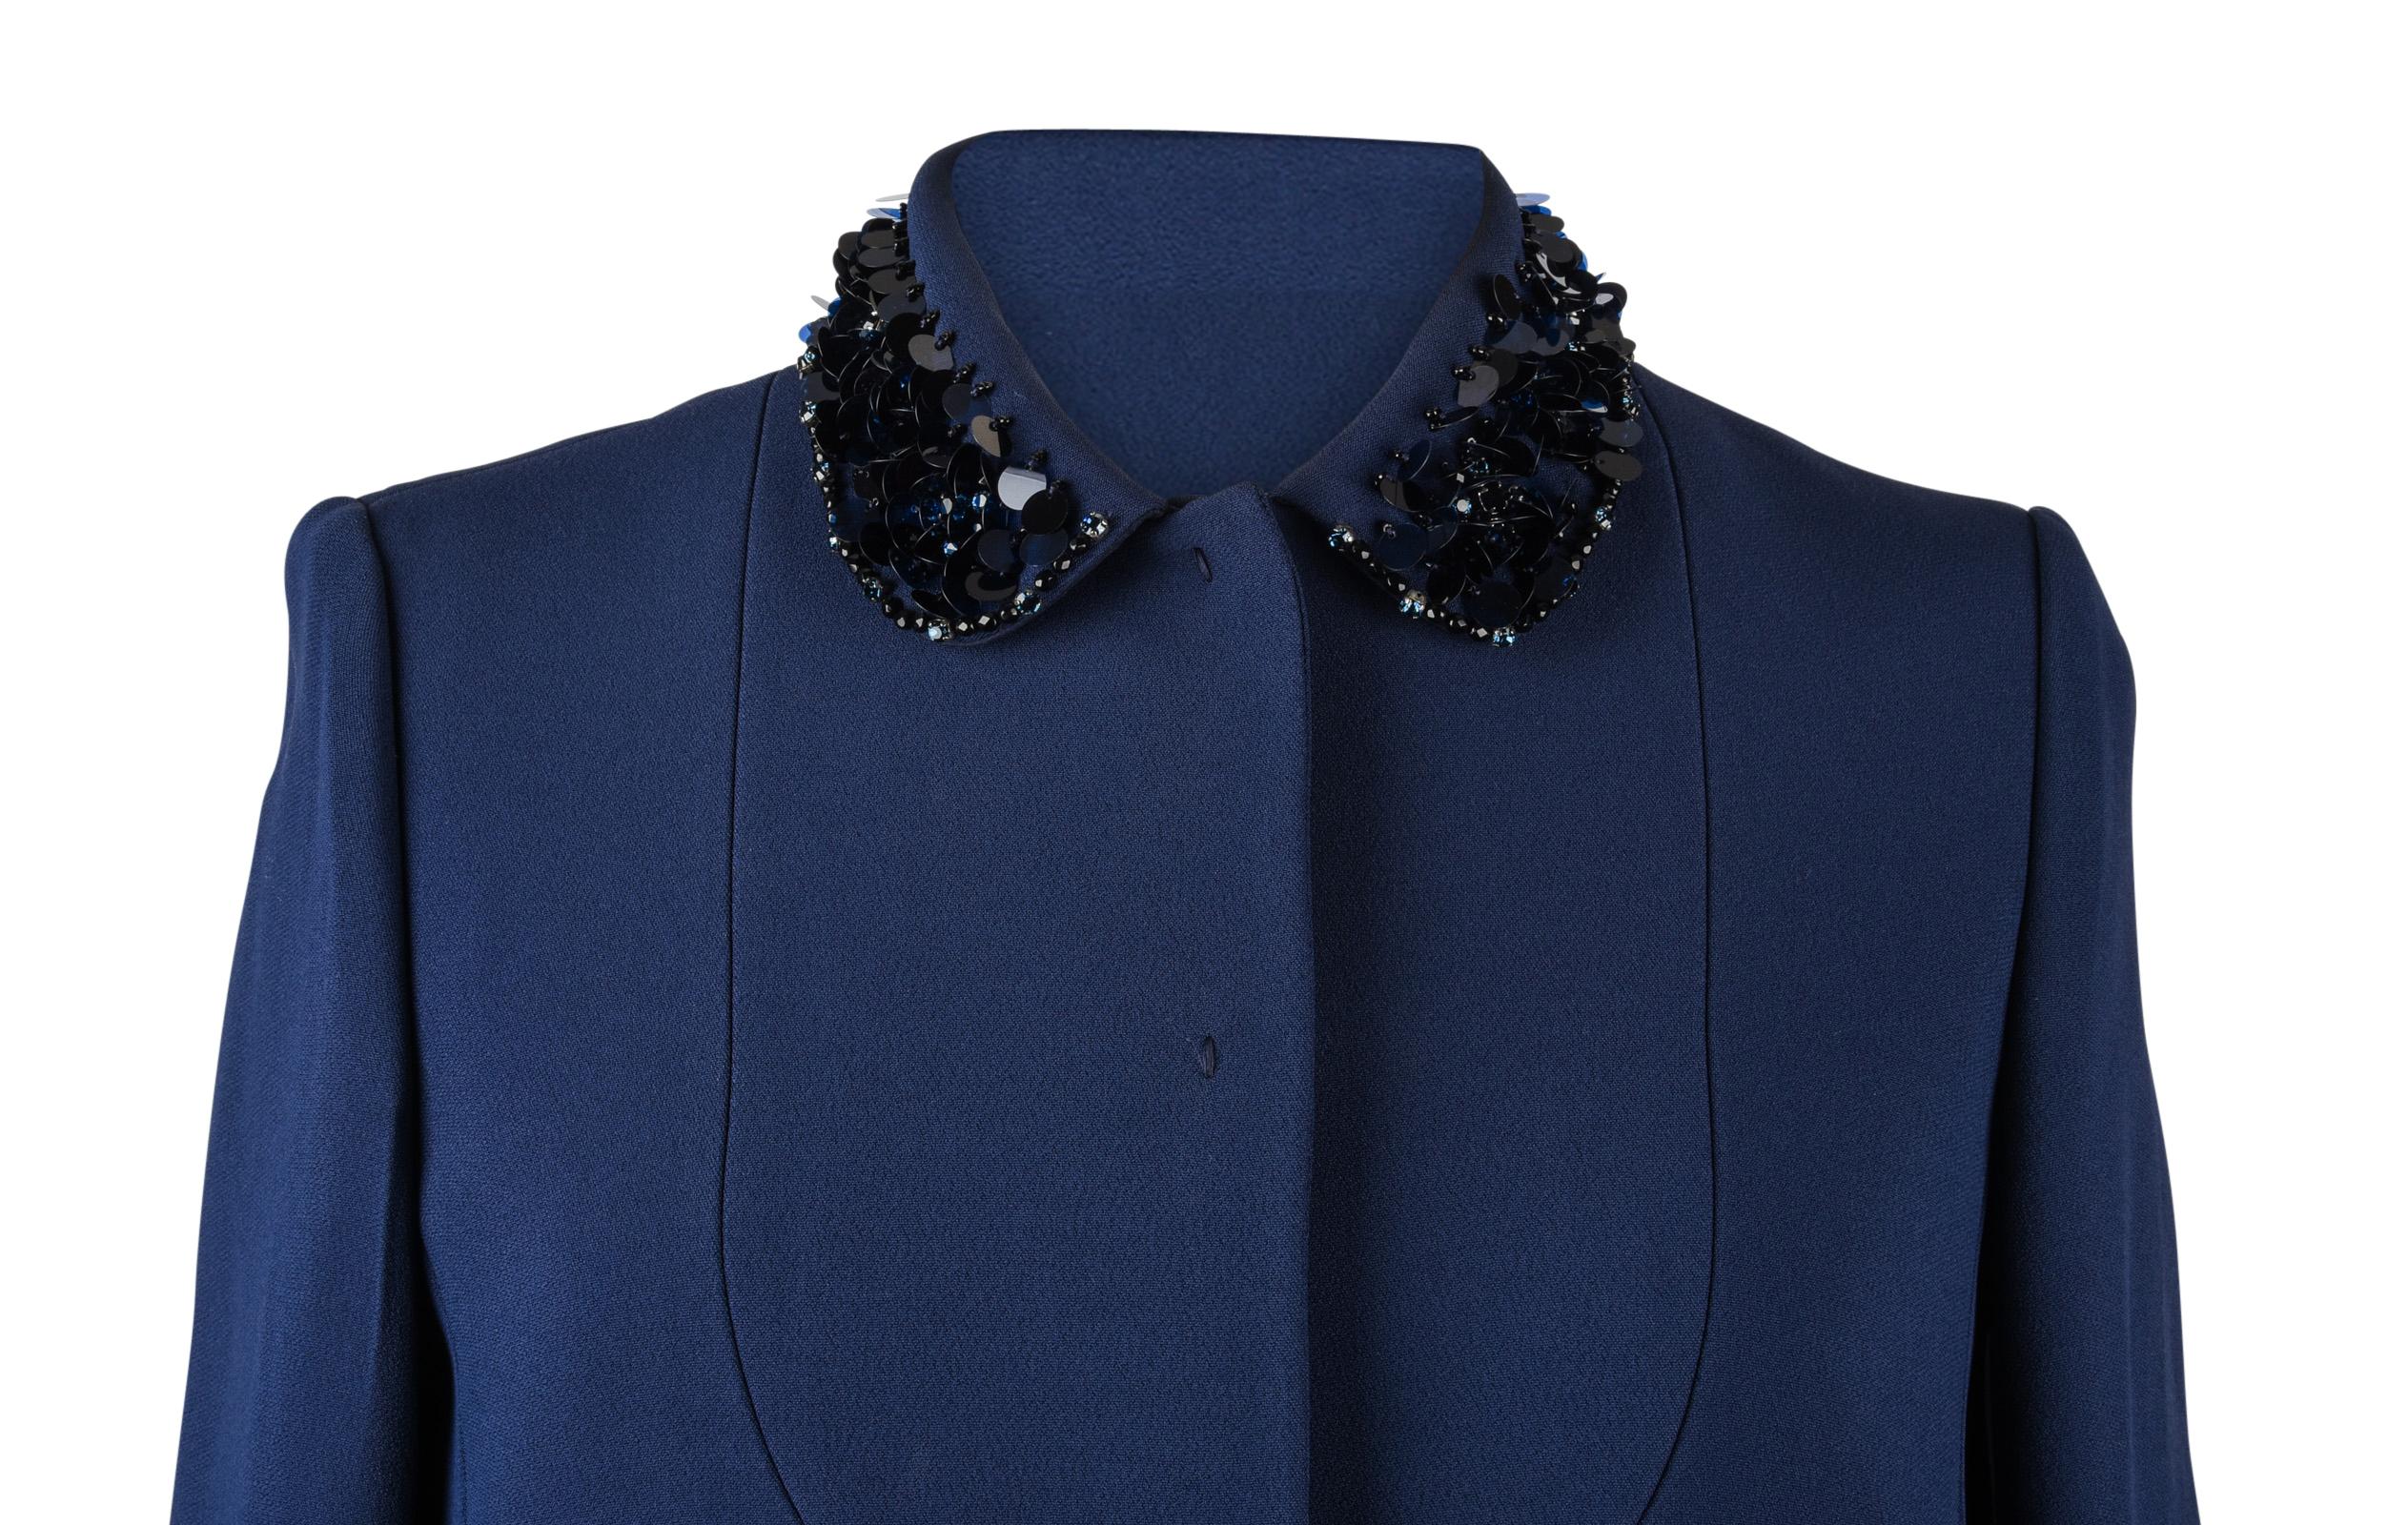 Purple Miu Miu Jacket Navy Embellished Collar / Pockets 3/4 Sleeve 42